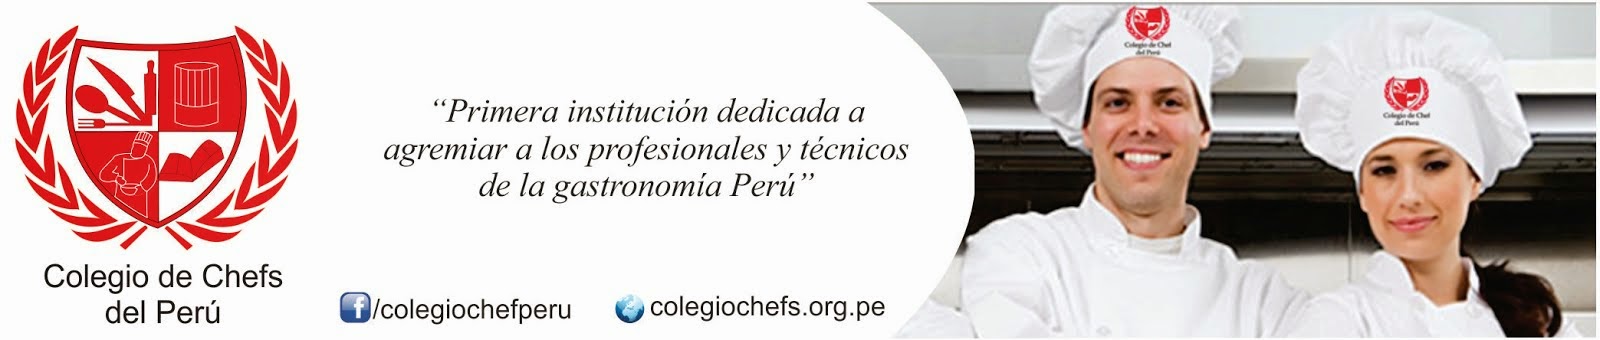 COLEGIO DE CHEFS DEL PERU